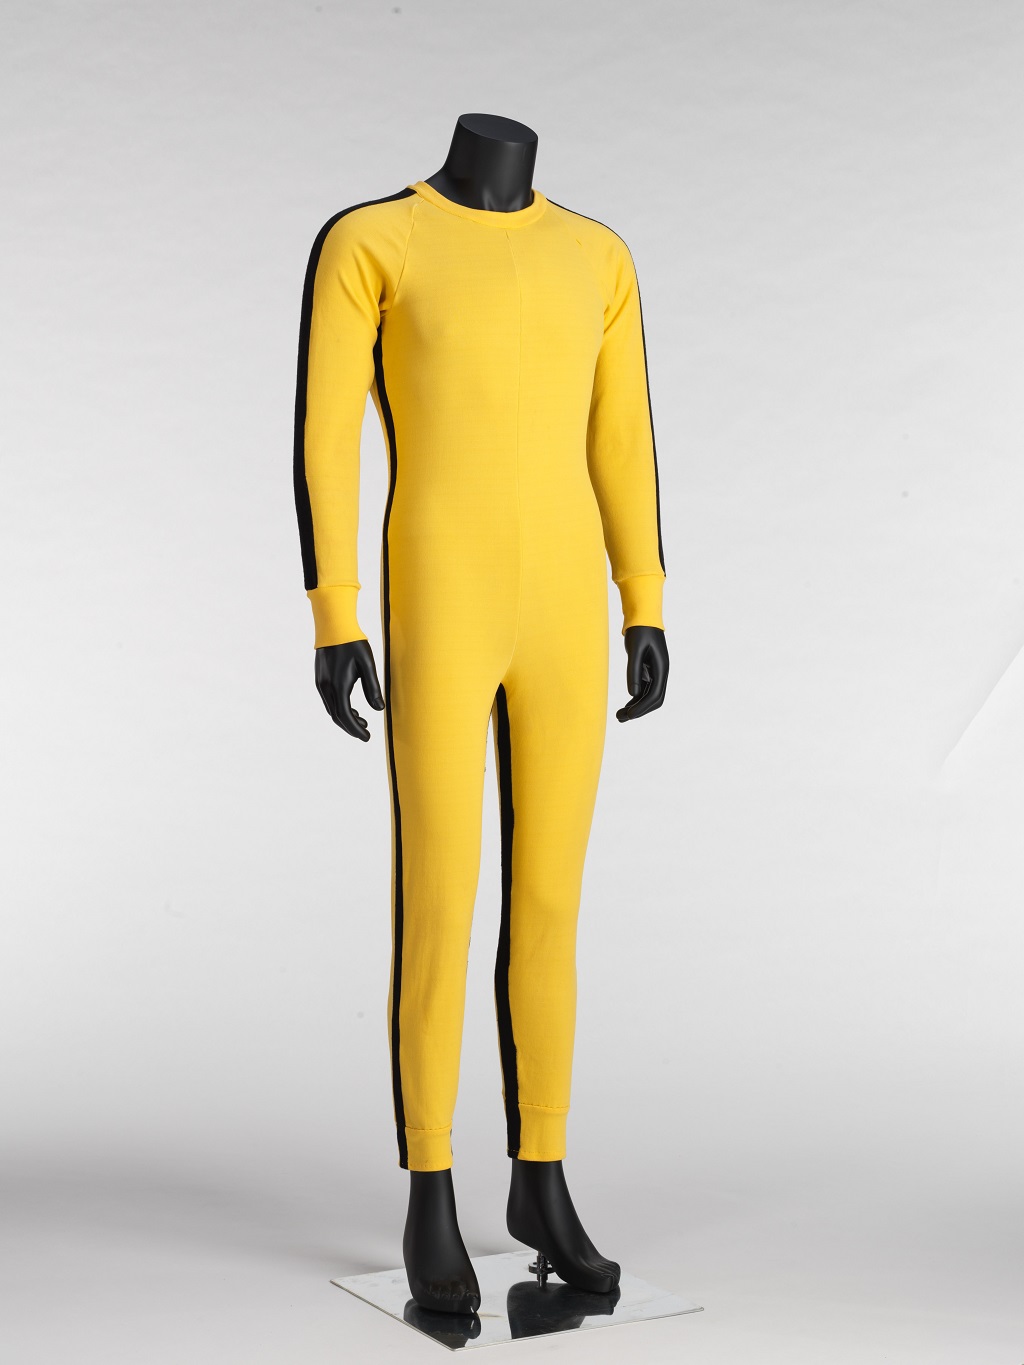 李小龙于电影《死亡游戏》中穿着的经典黄色战衣